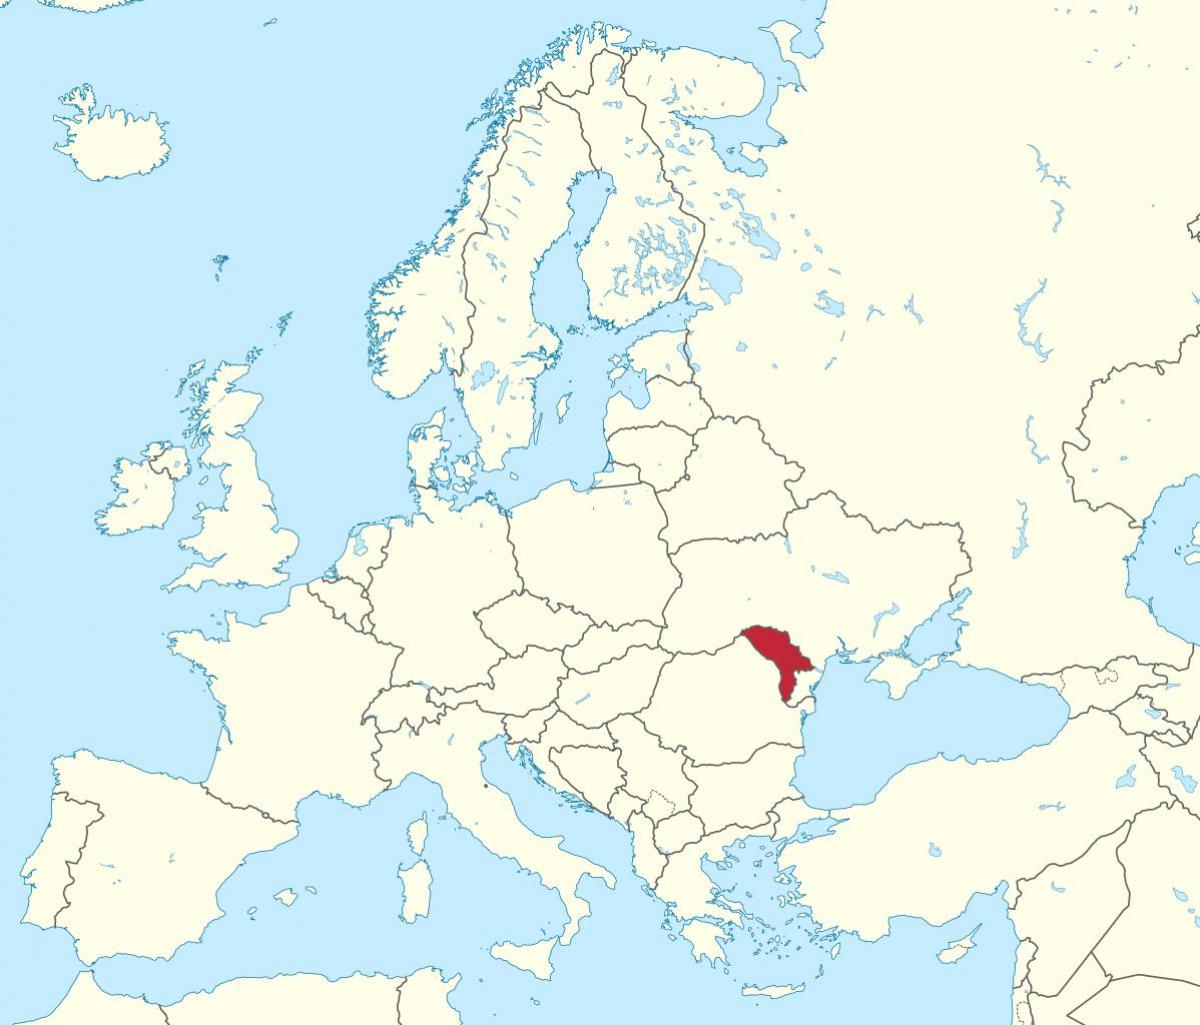 Bản đồ của Moldova châu âu